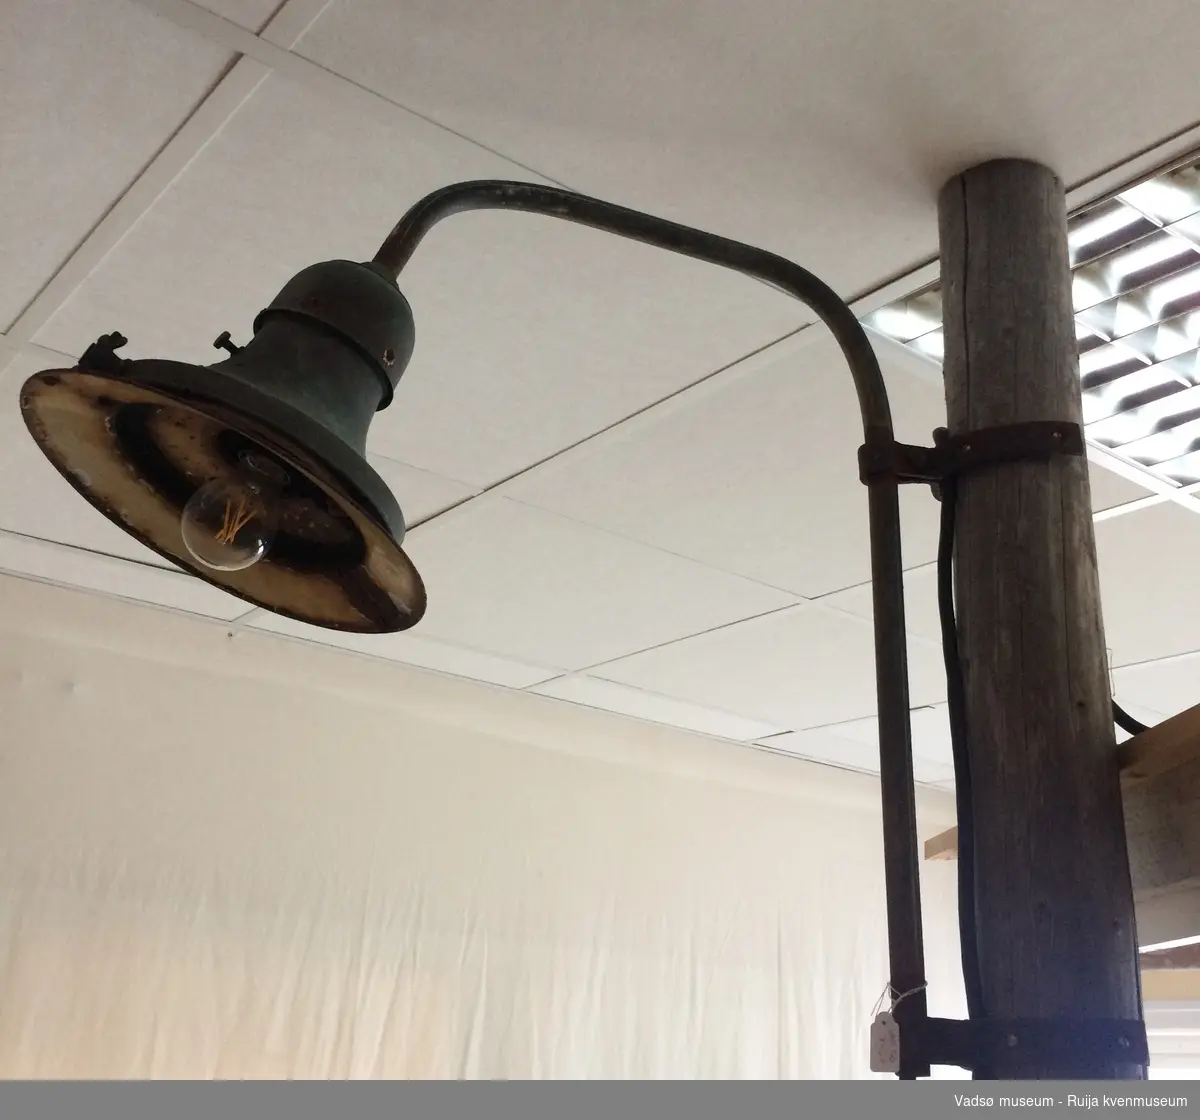 Gatelampe med grønn lampeskjerm. Lampa har mye rust, og den har betydelige skader på skjermen.